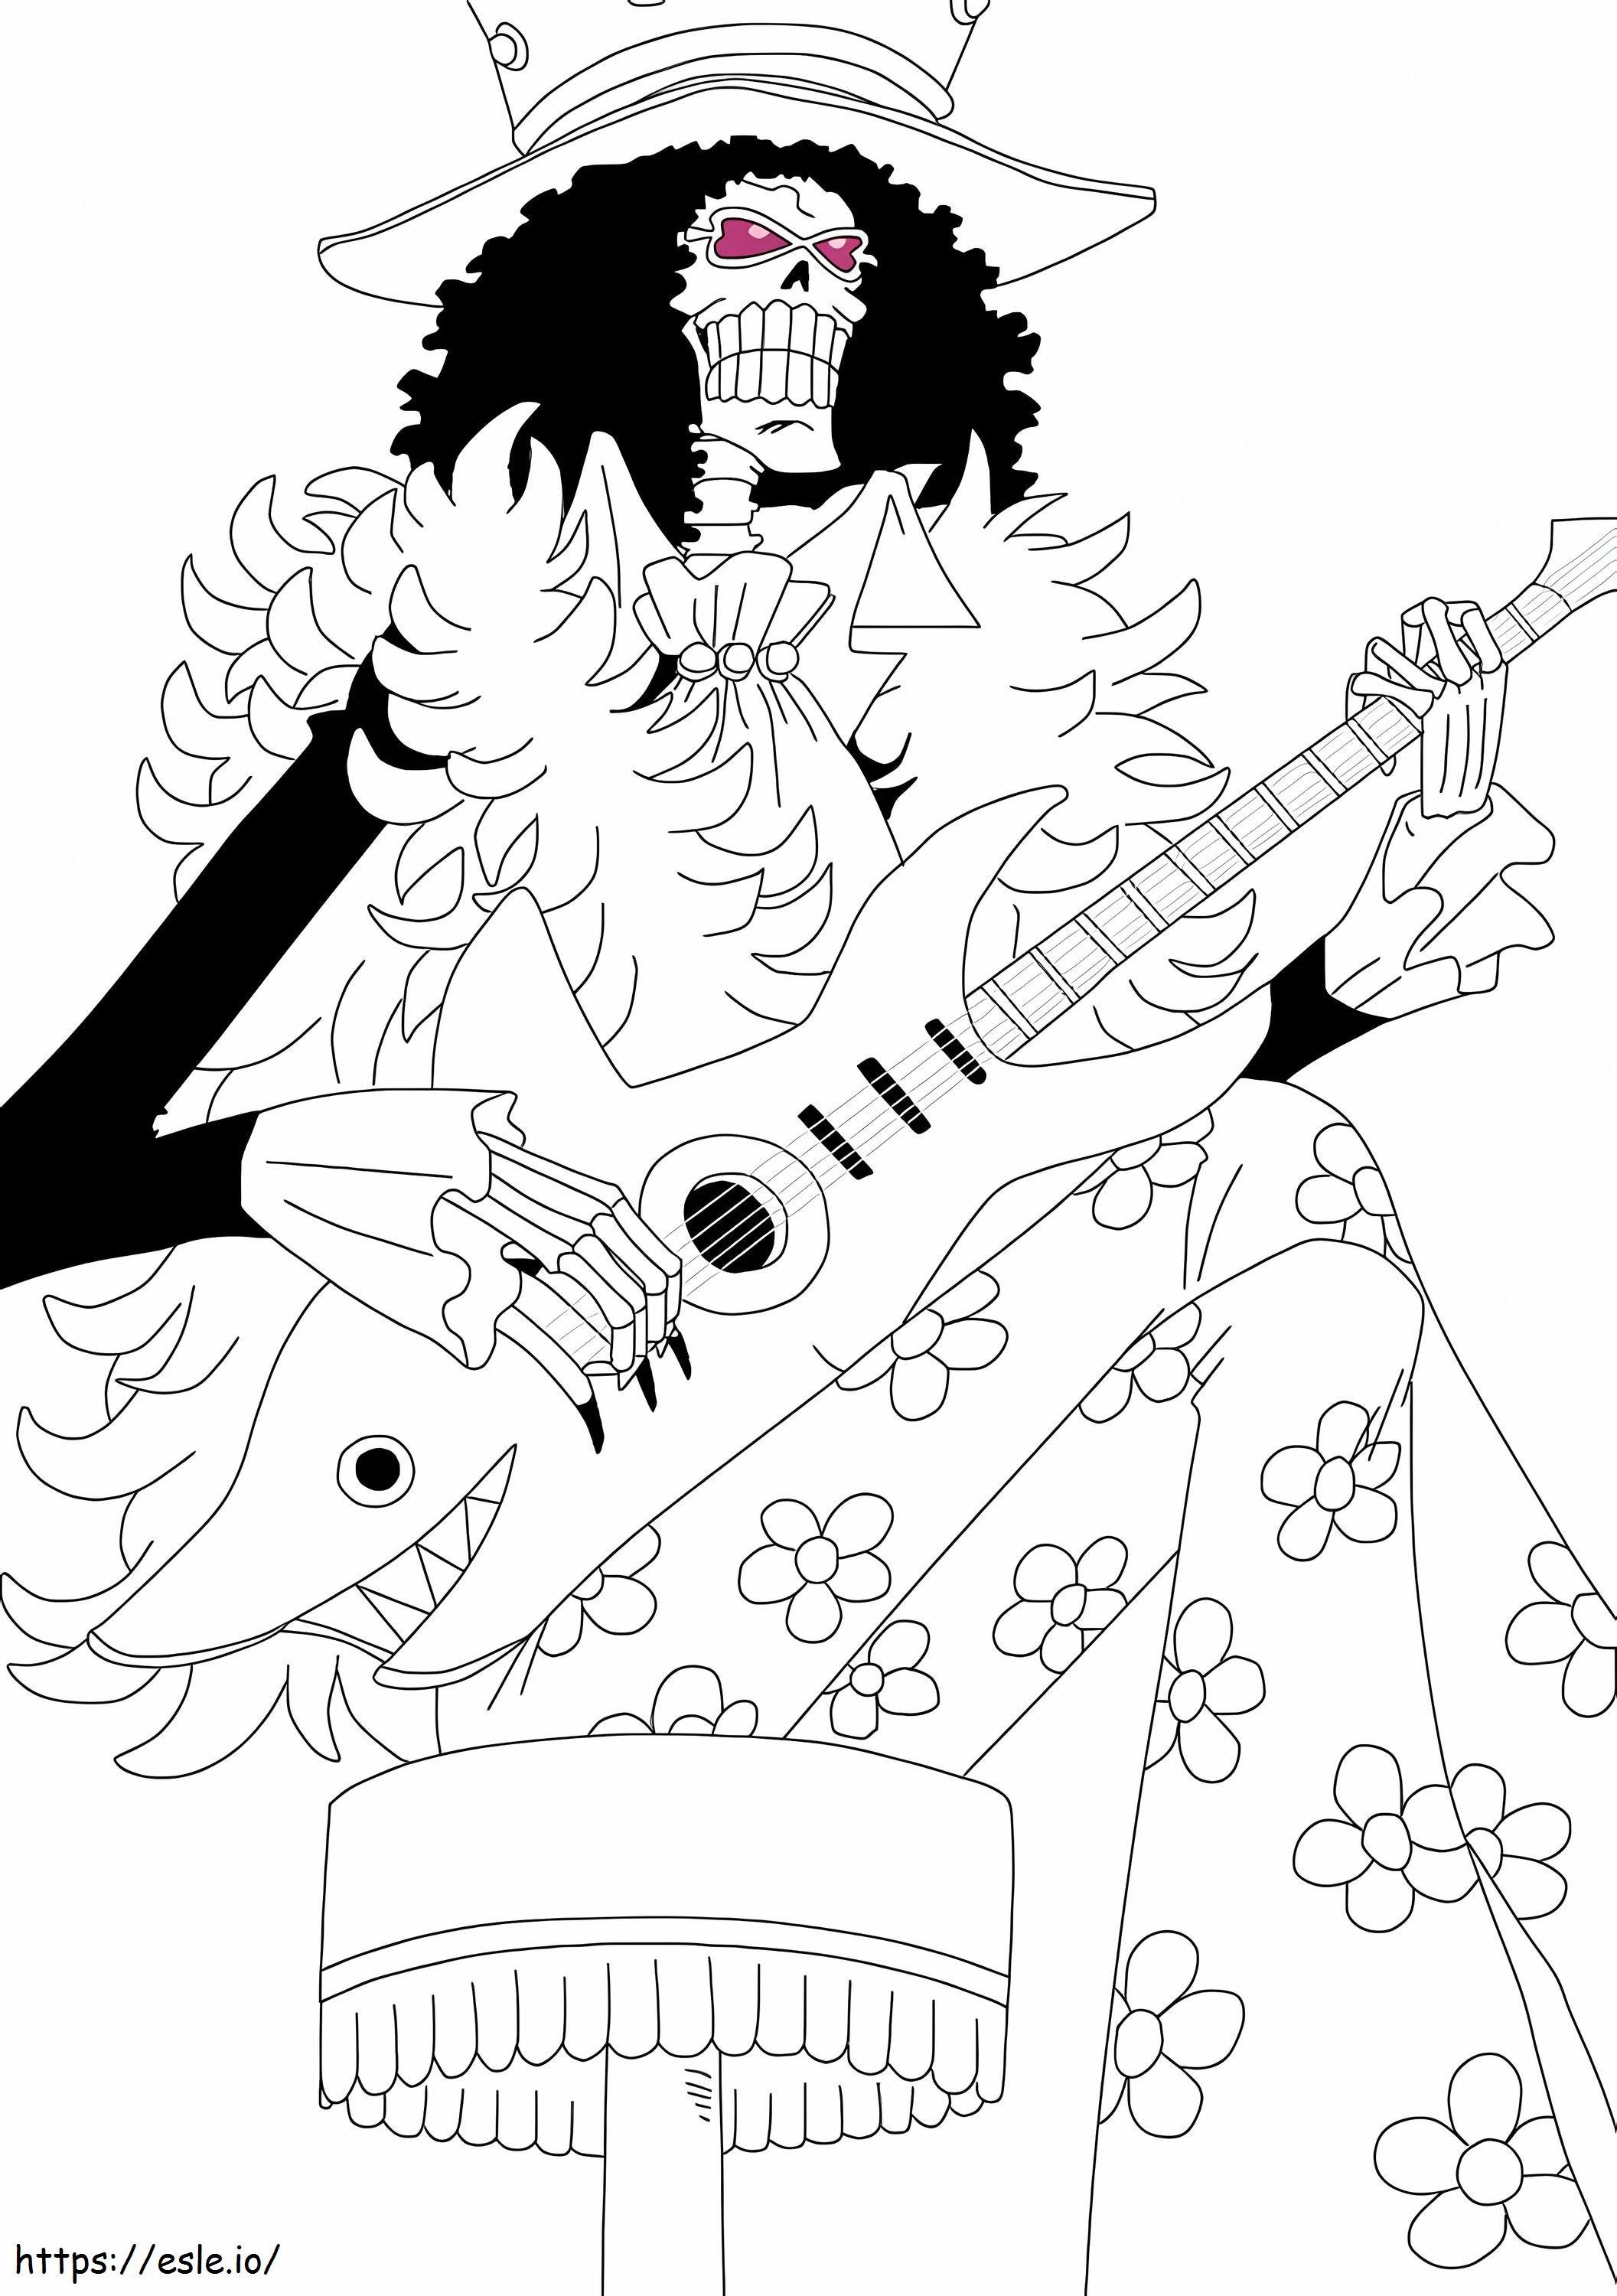 Brook De One Piece coloring page